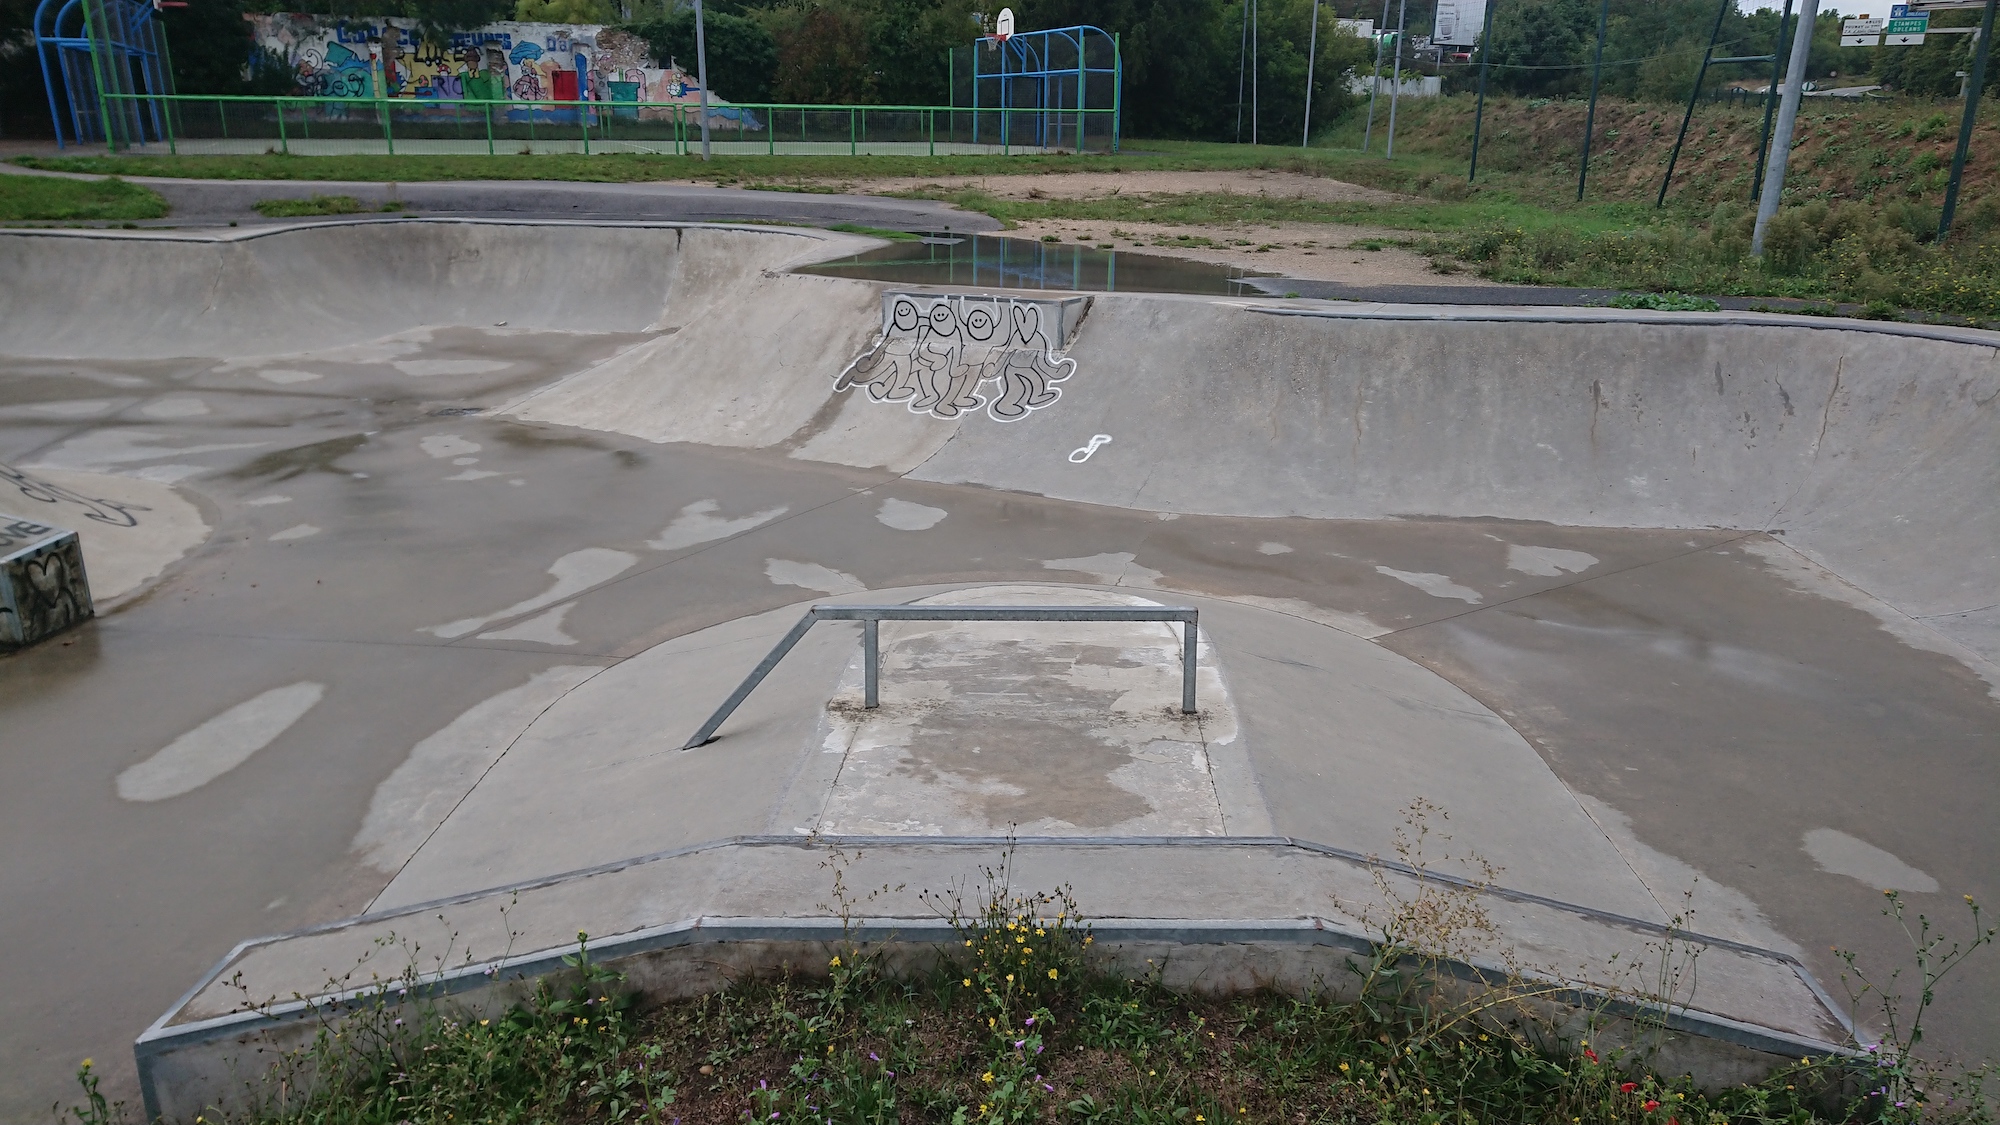 Ablis skatepark